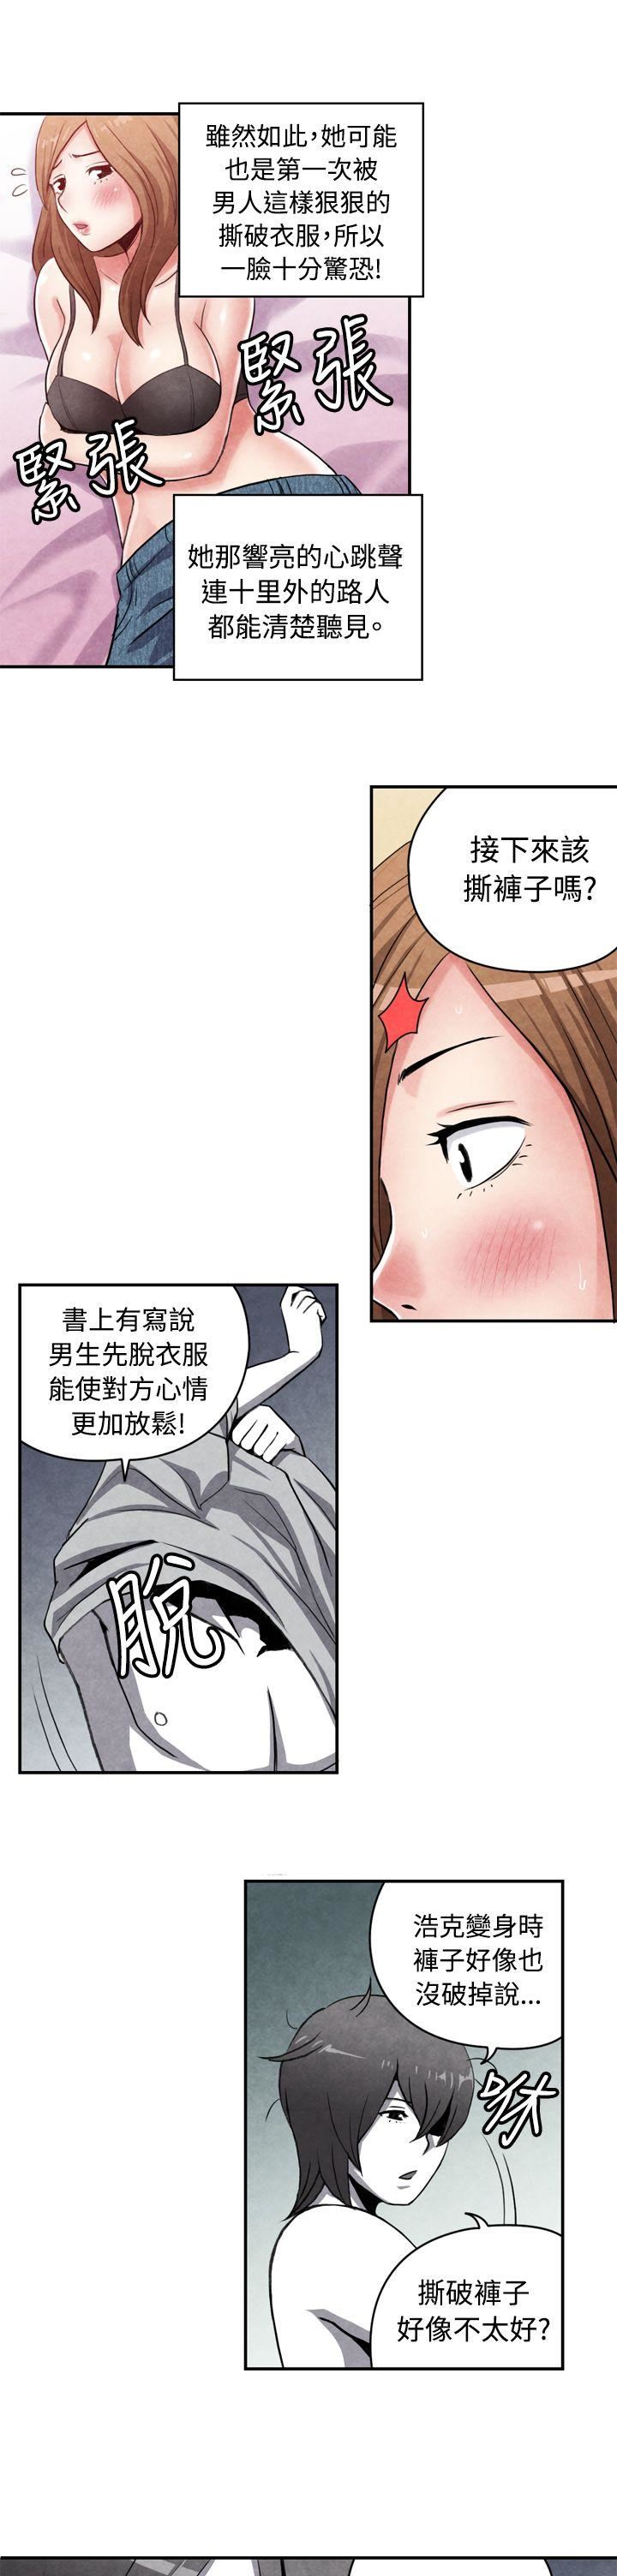 韩国污漫画 生物學的女性攻略法 CASE15-1.恋爱高手VS恋爱高手 7